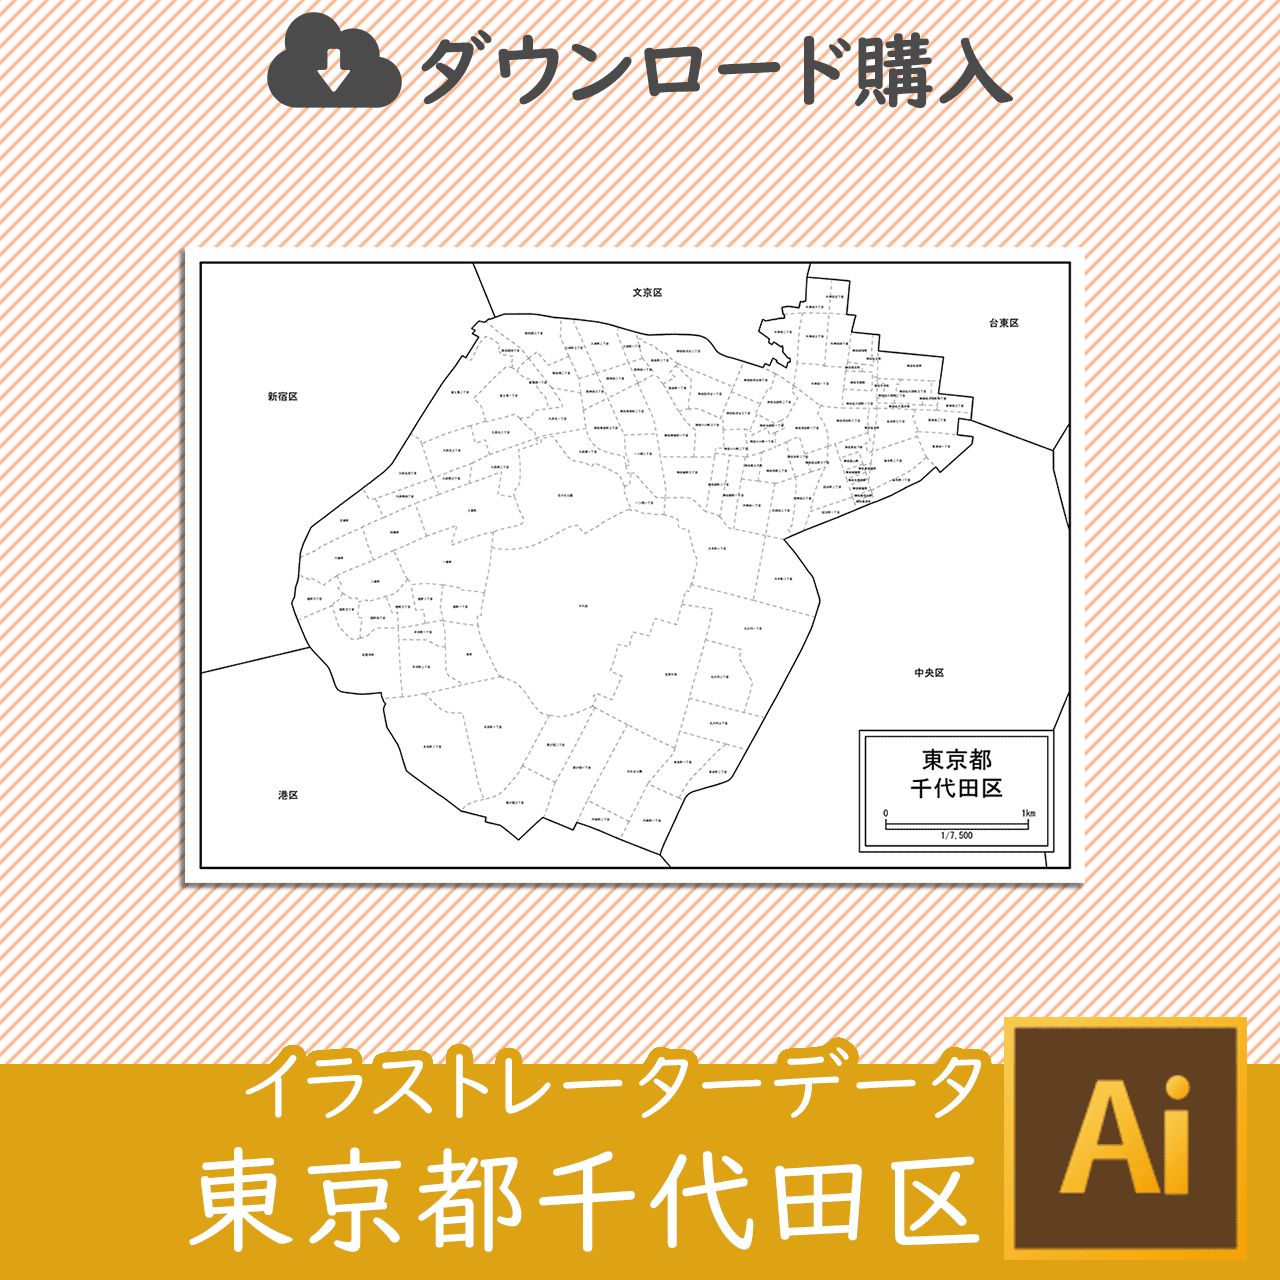 東京都千代田区の白地図のサムネイル